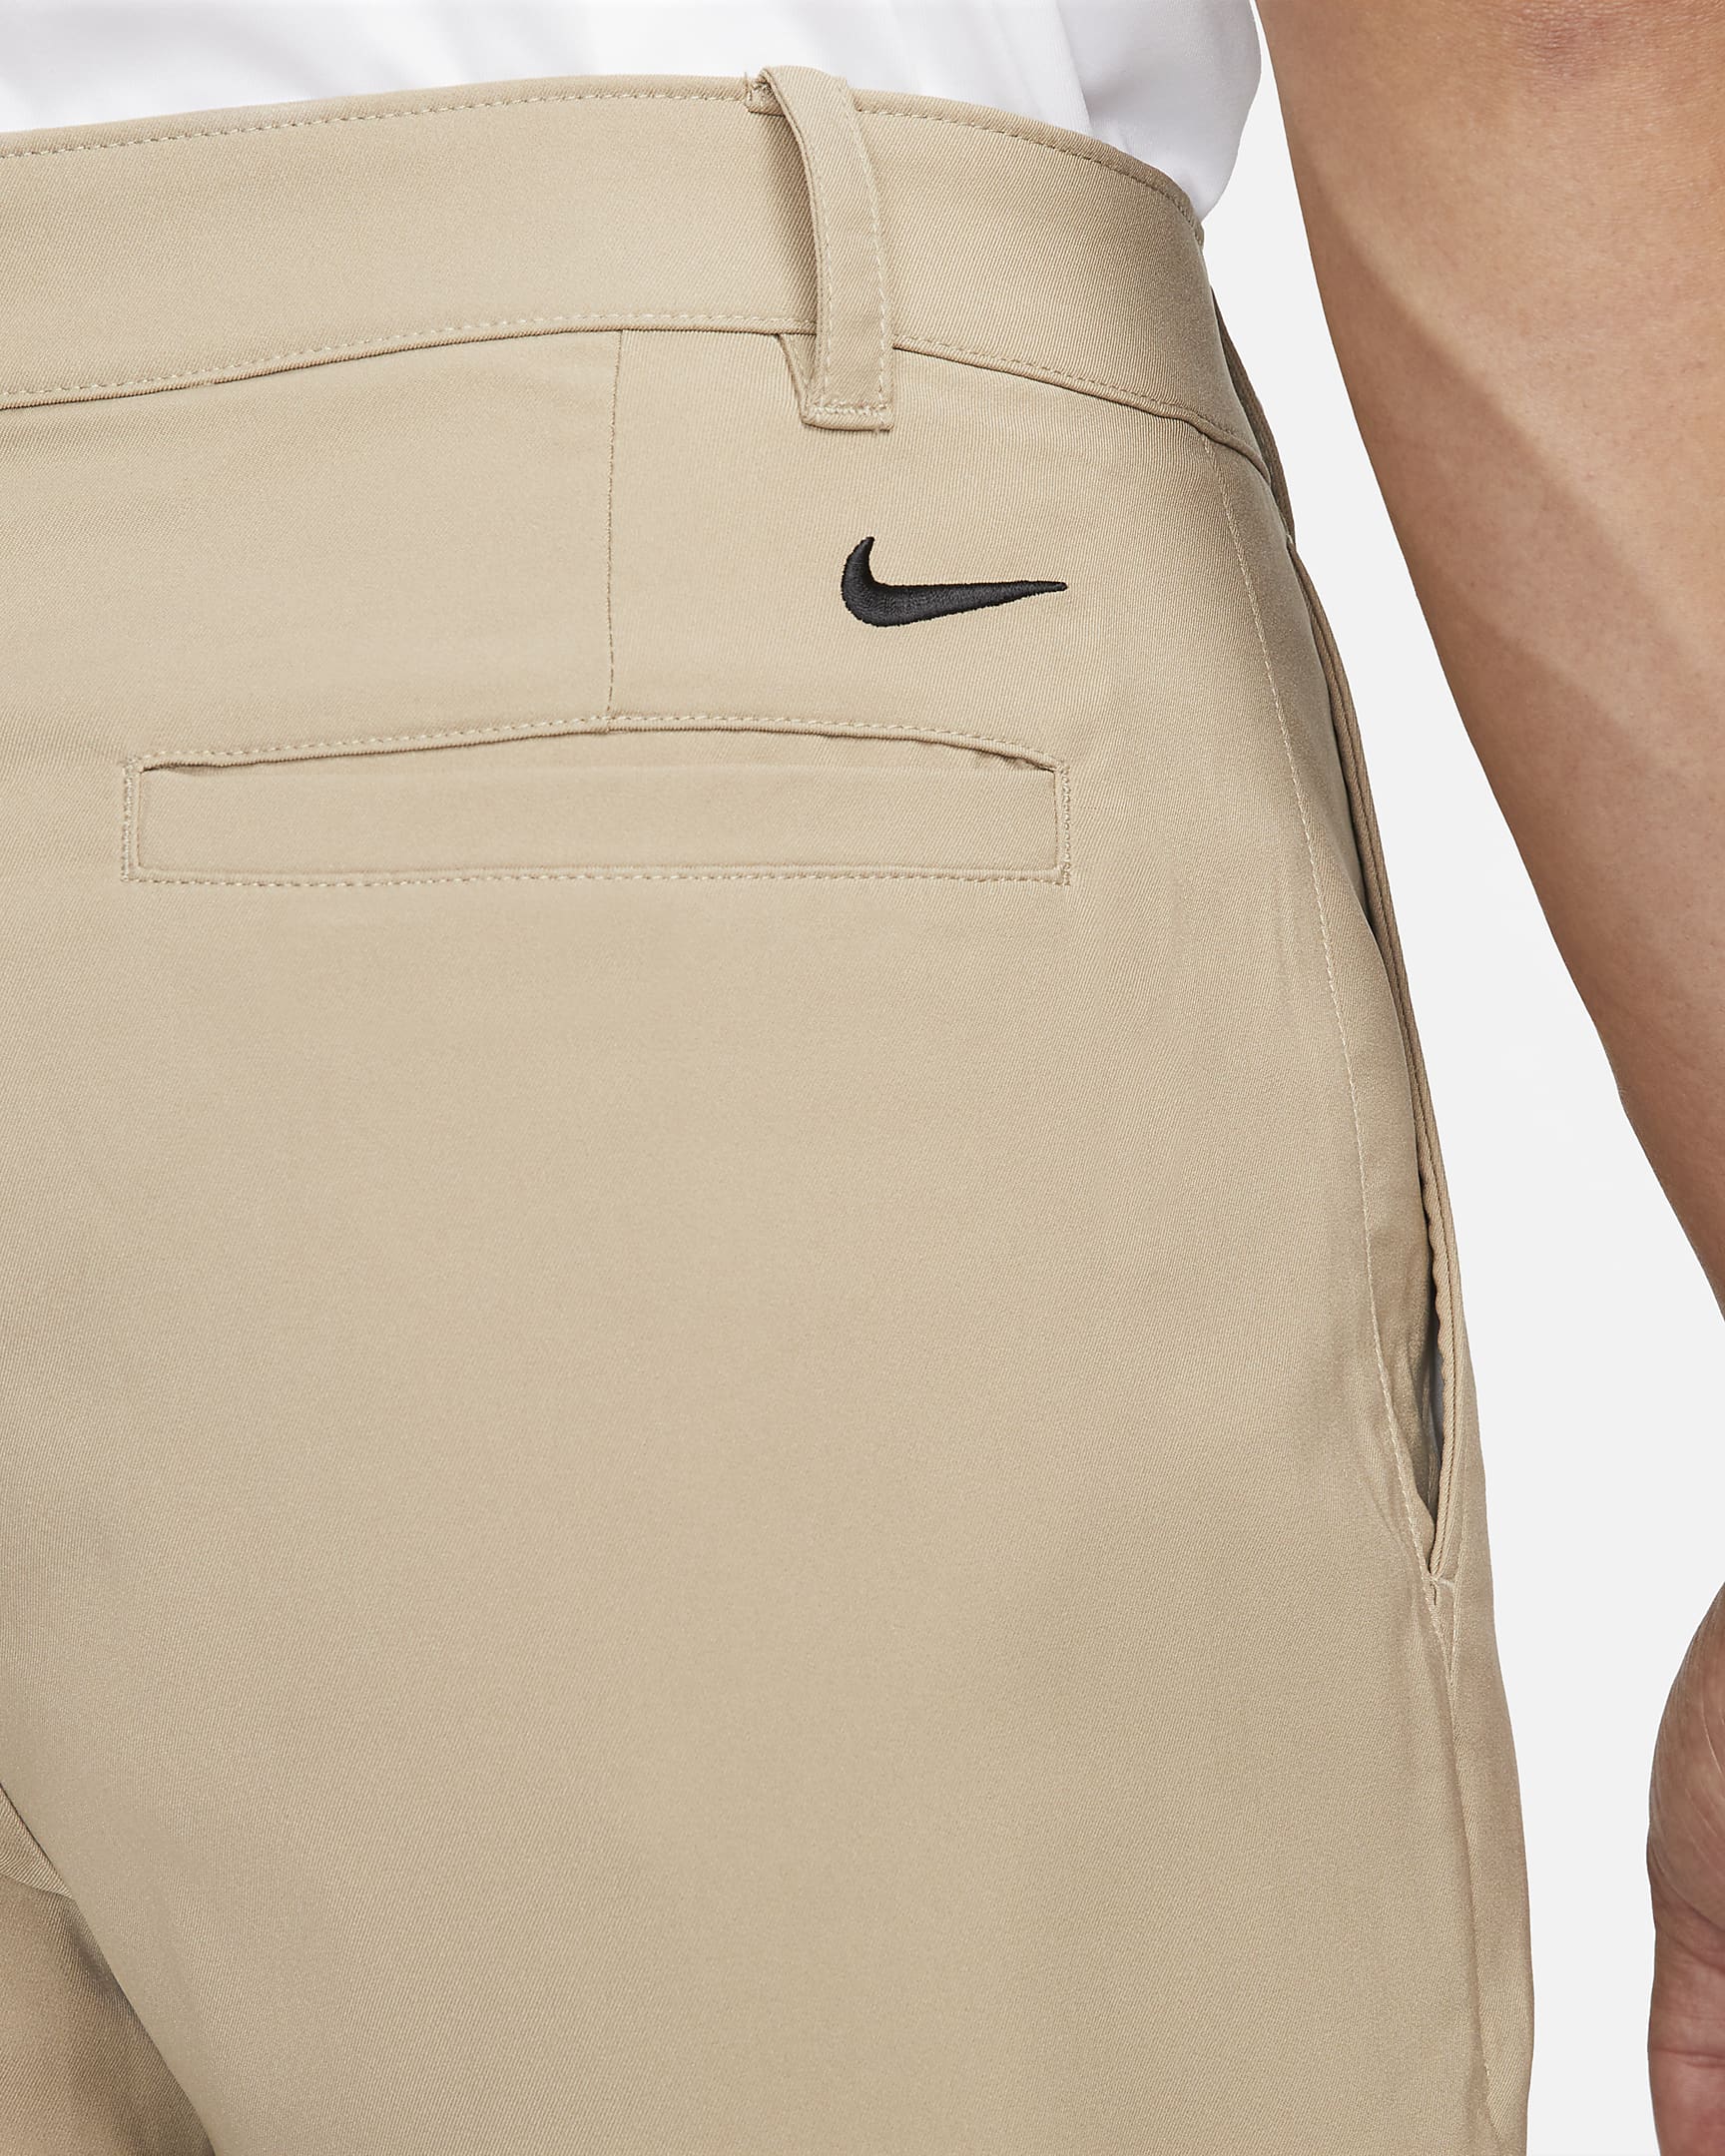 Nike Dri-FIT Victory Men's Golf Trousers - Khaki/Black